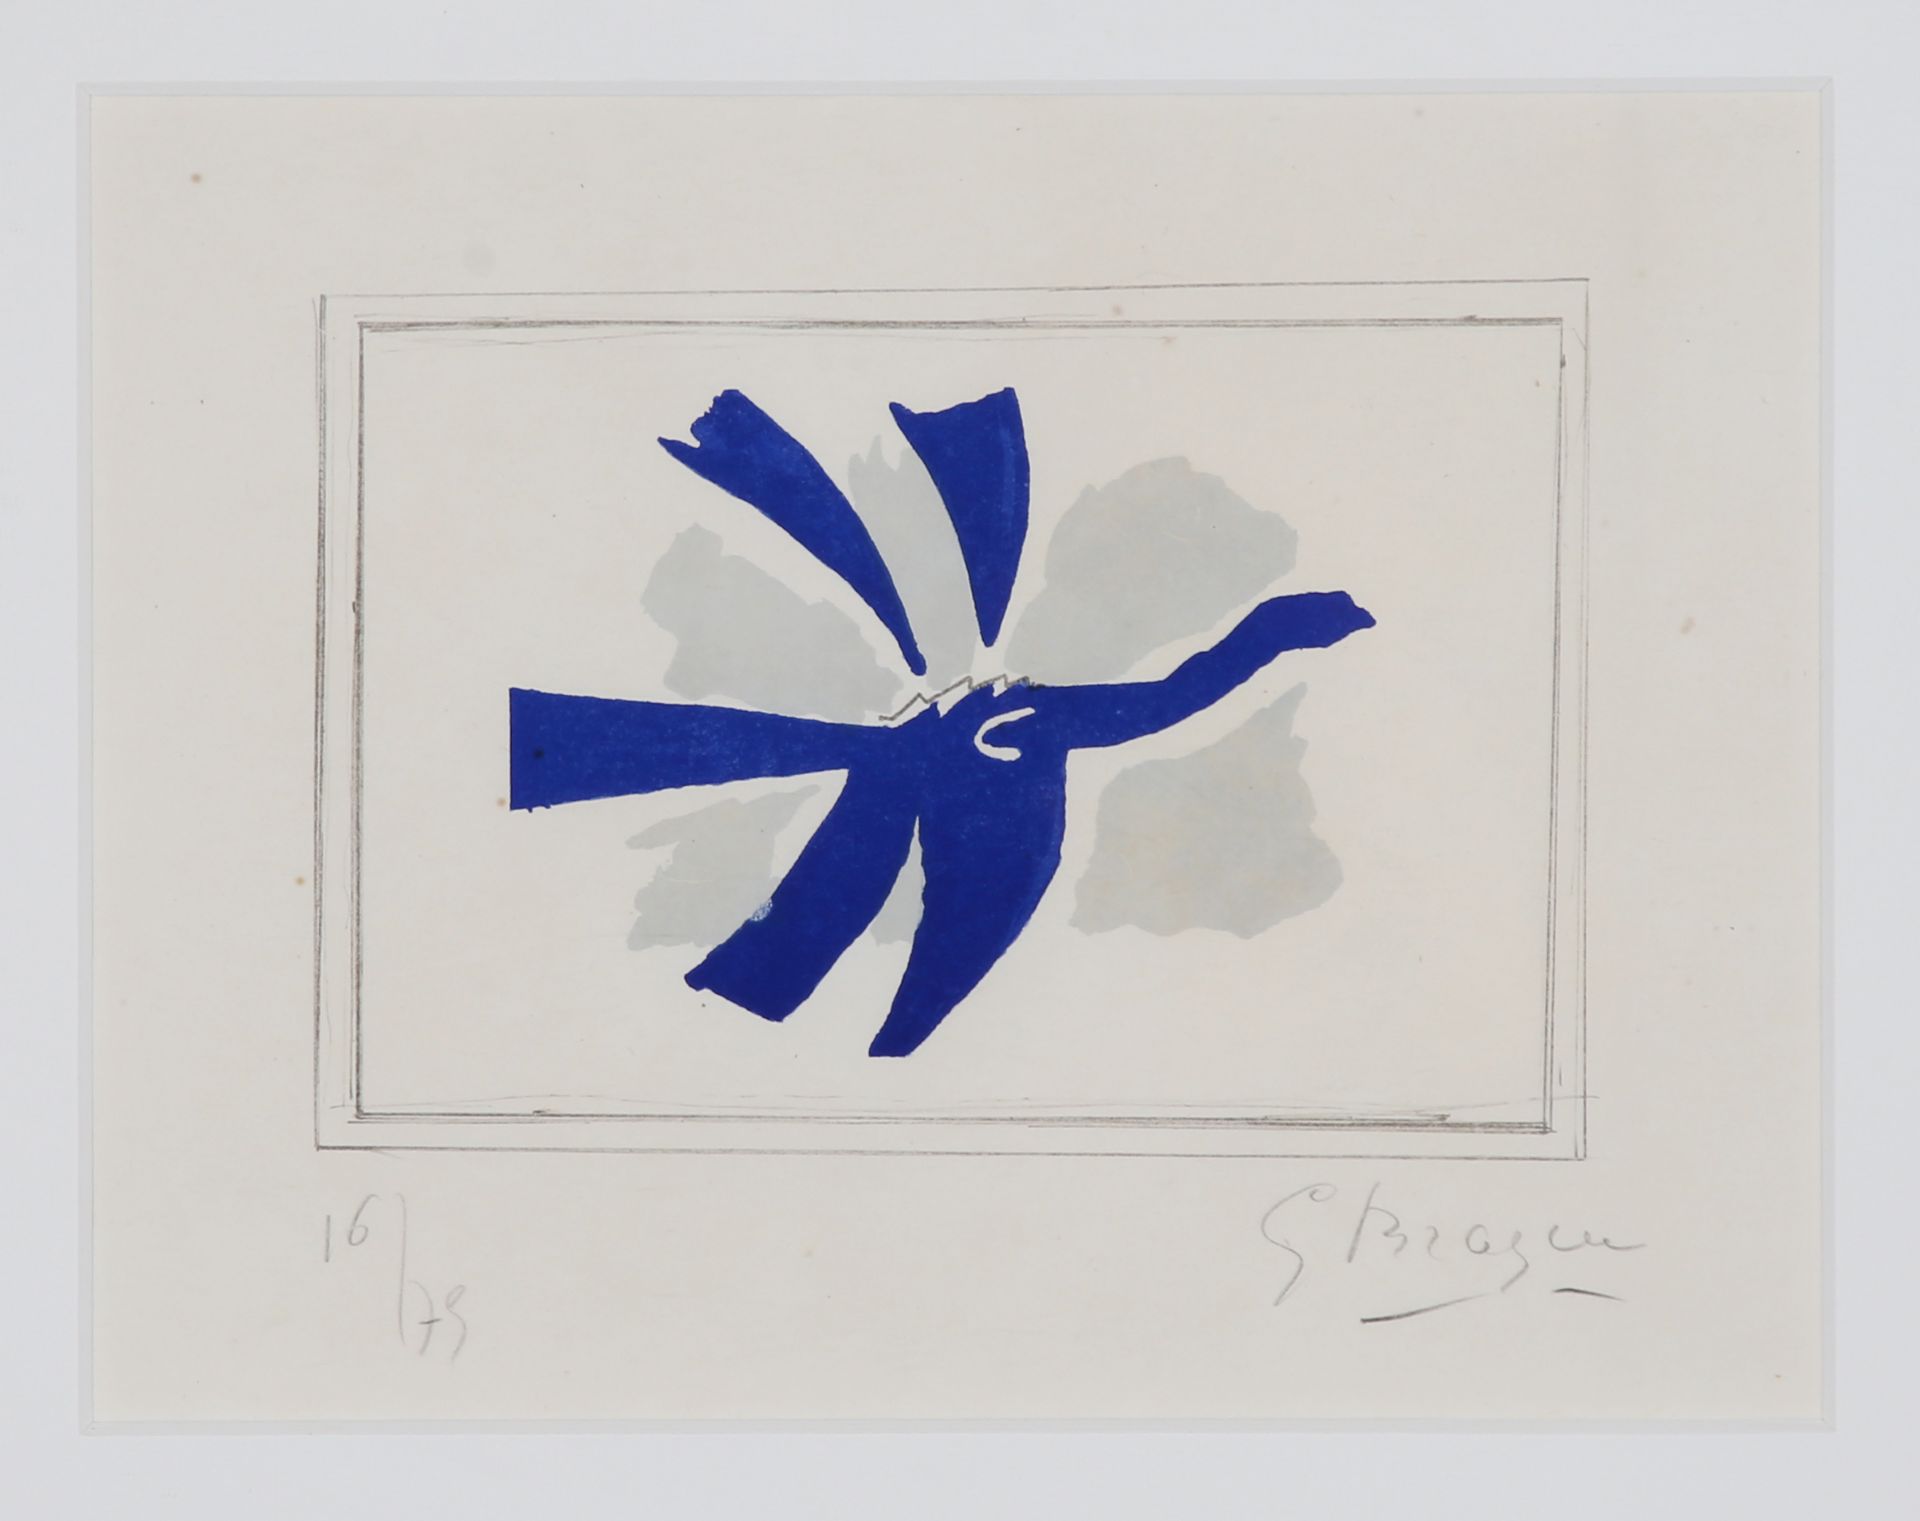 Georges Braque. 1882 Argenteuil - 1963 Paris.